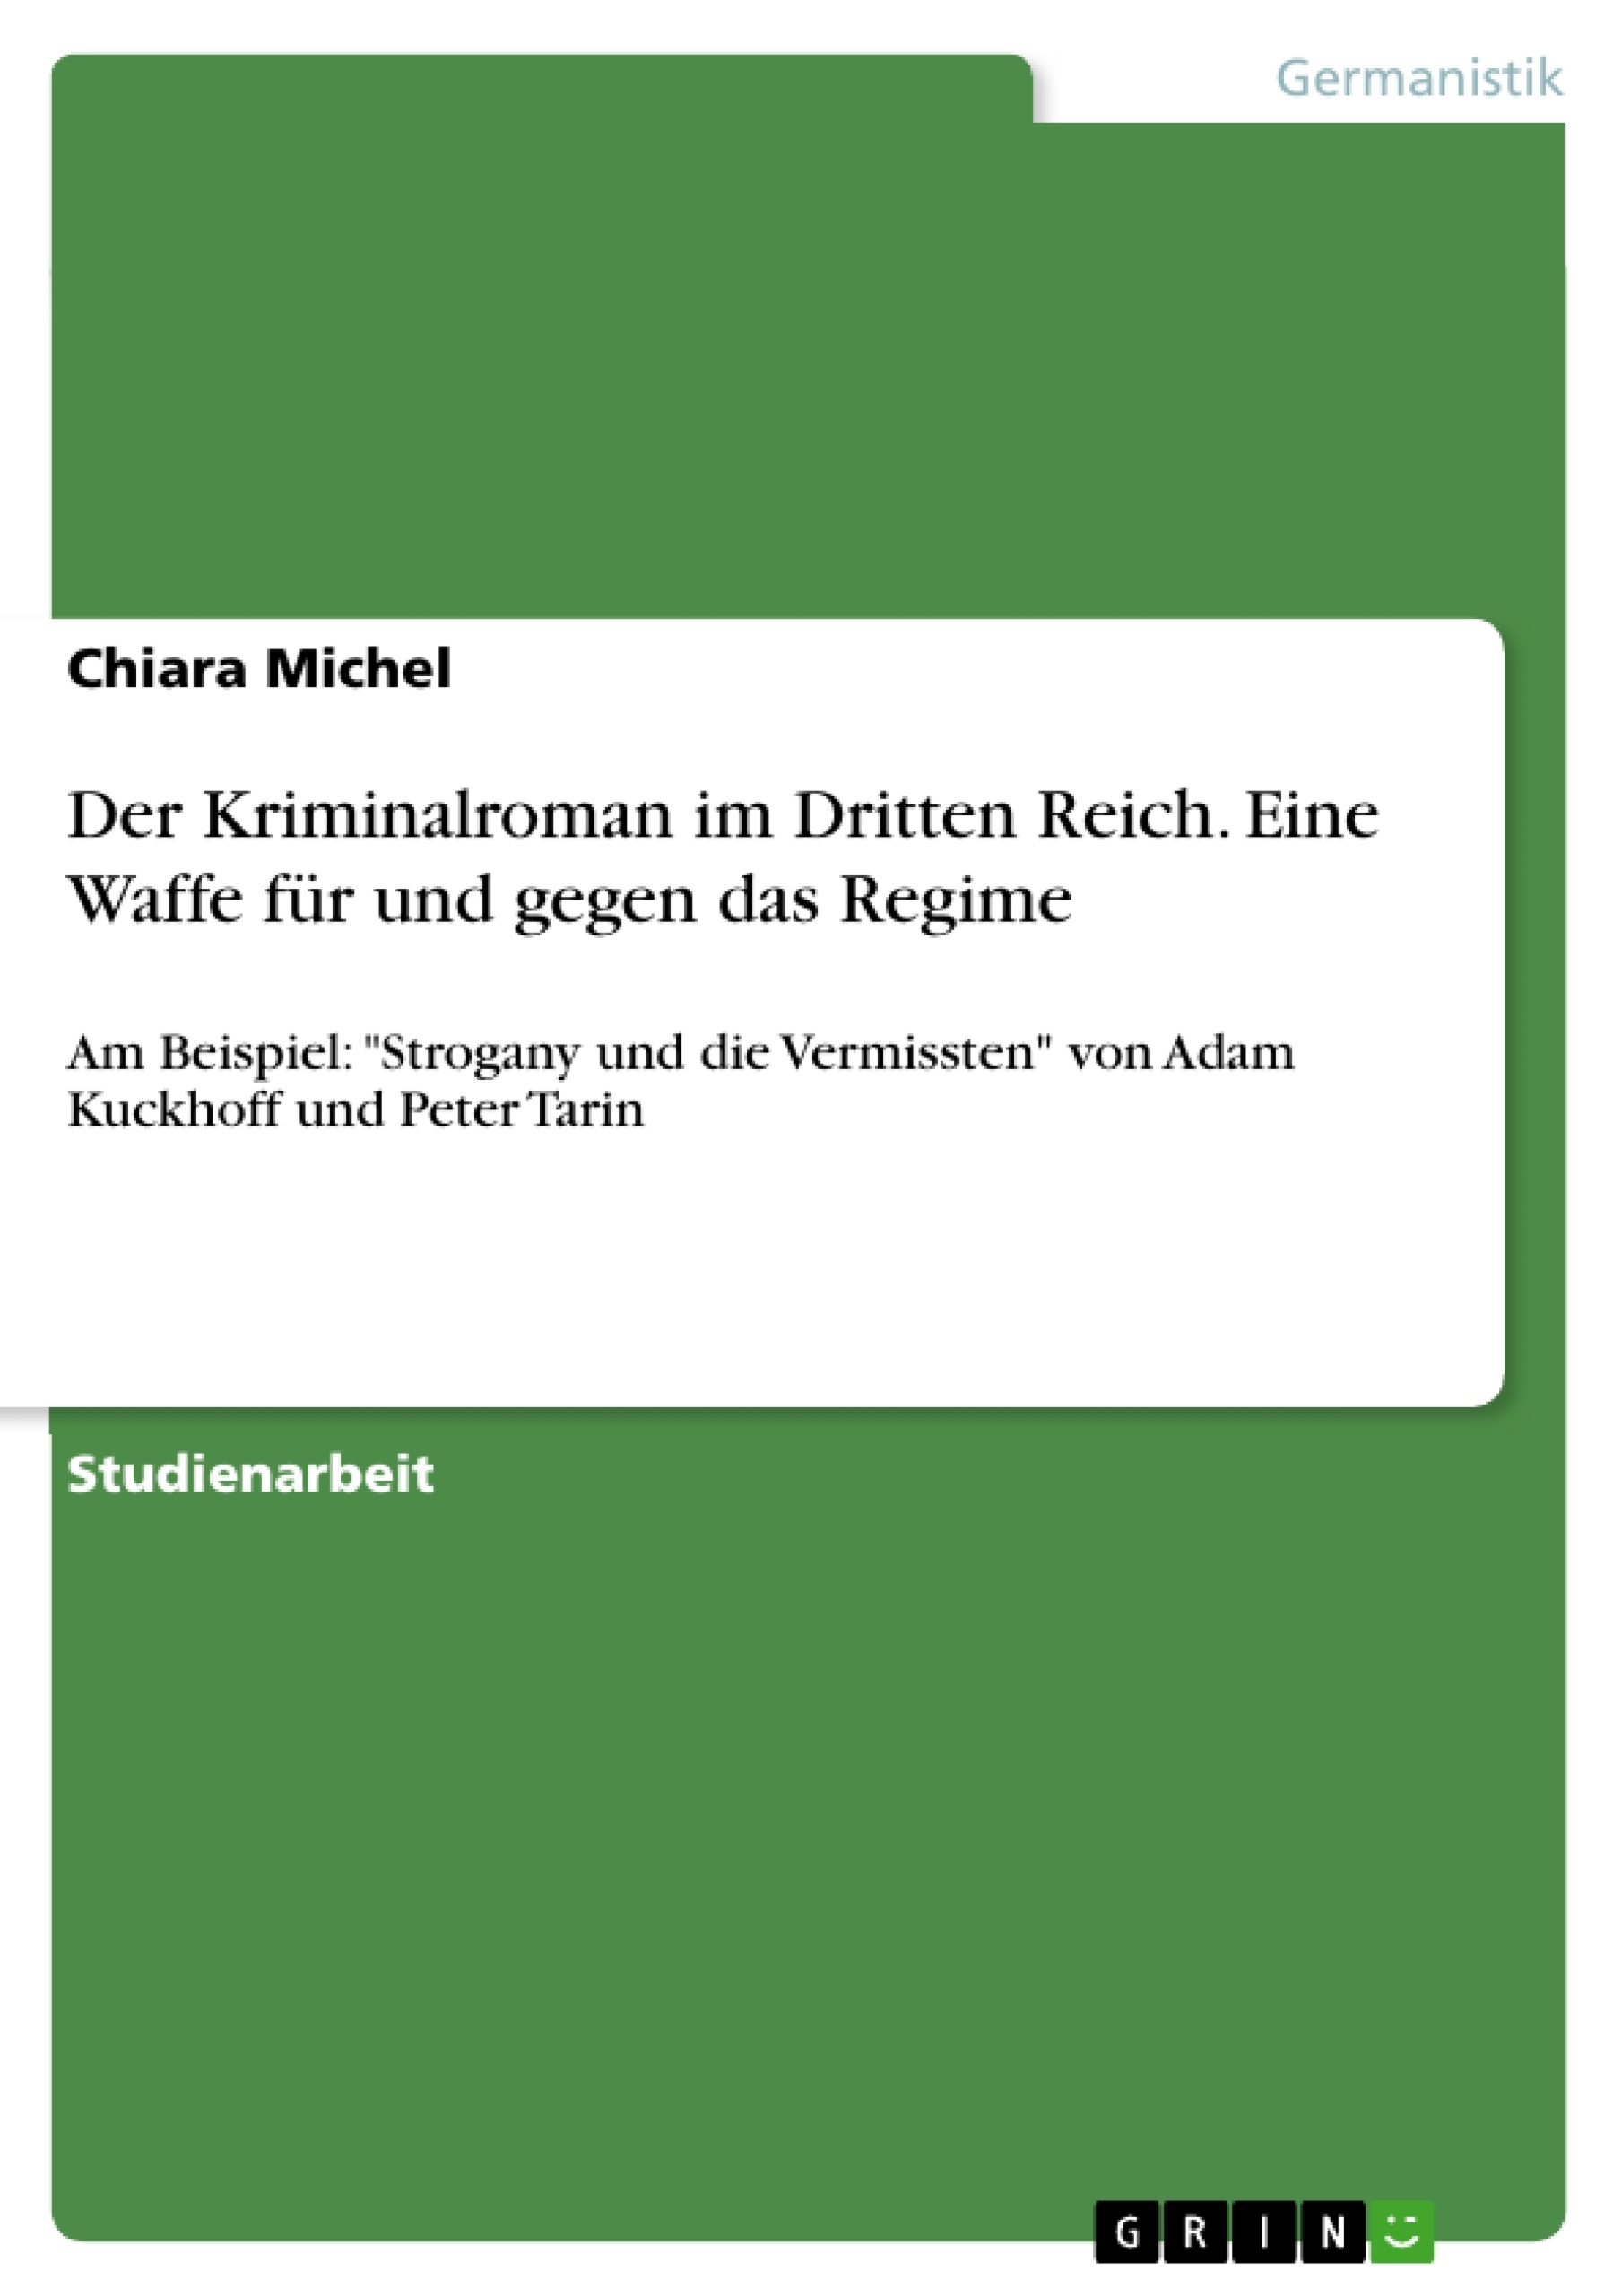 Título: Der Kriminalroman im Dritten Reich. Eine Waffe für und gegen das Regime